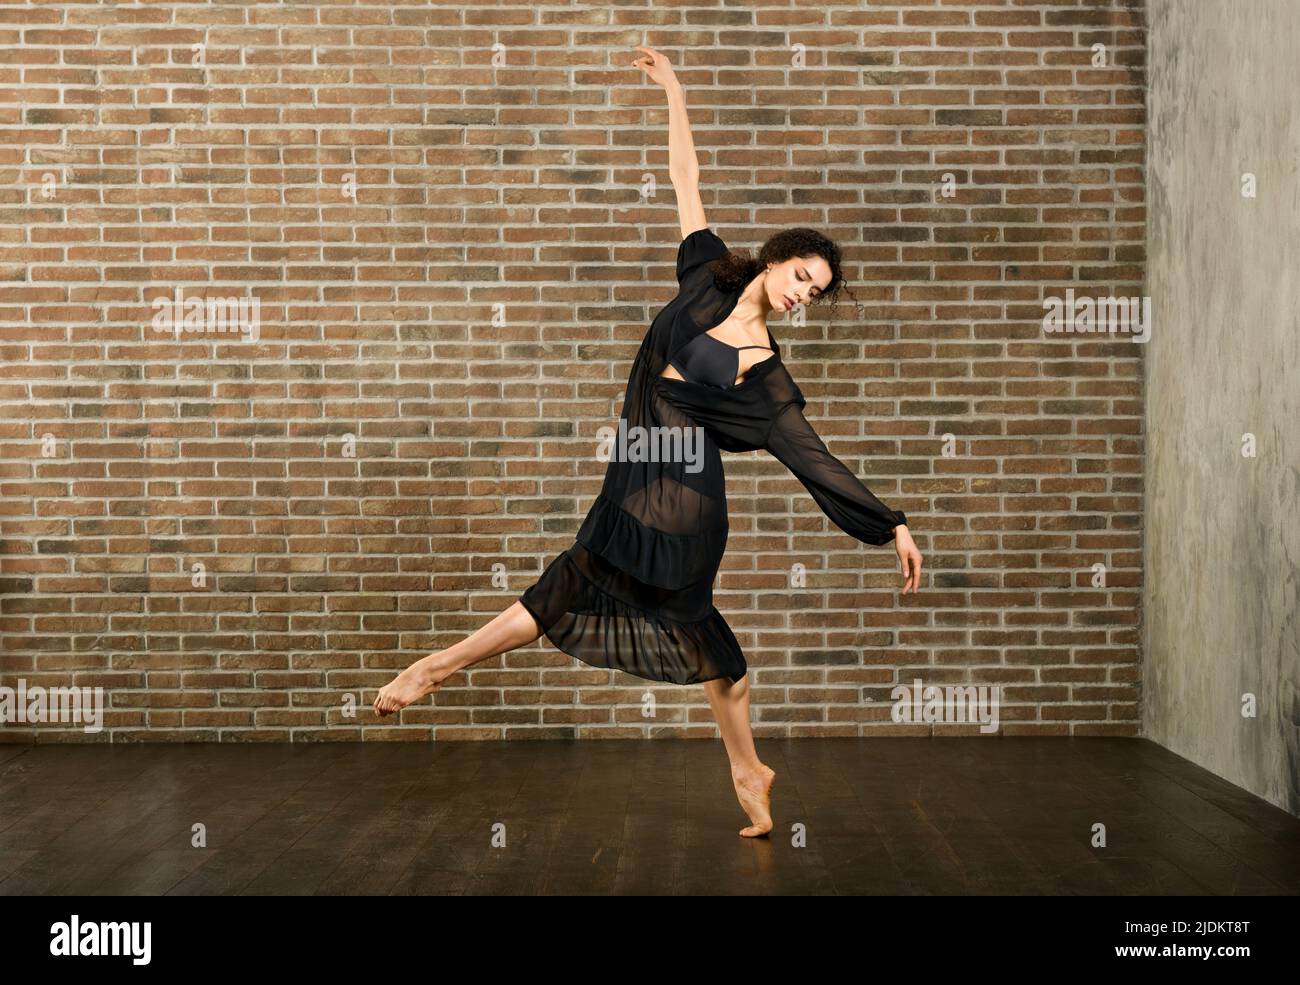 Corpo completo di ballerina femminile flessibile a piedi nudi in piedi su una gamba mentre si prova a ballare contro la parete di mattoni in studio Foto Stock